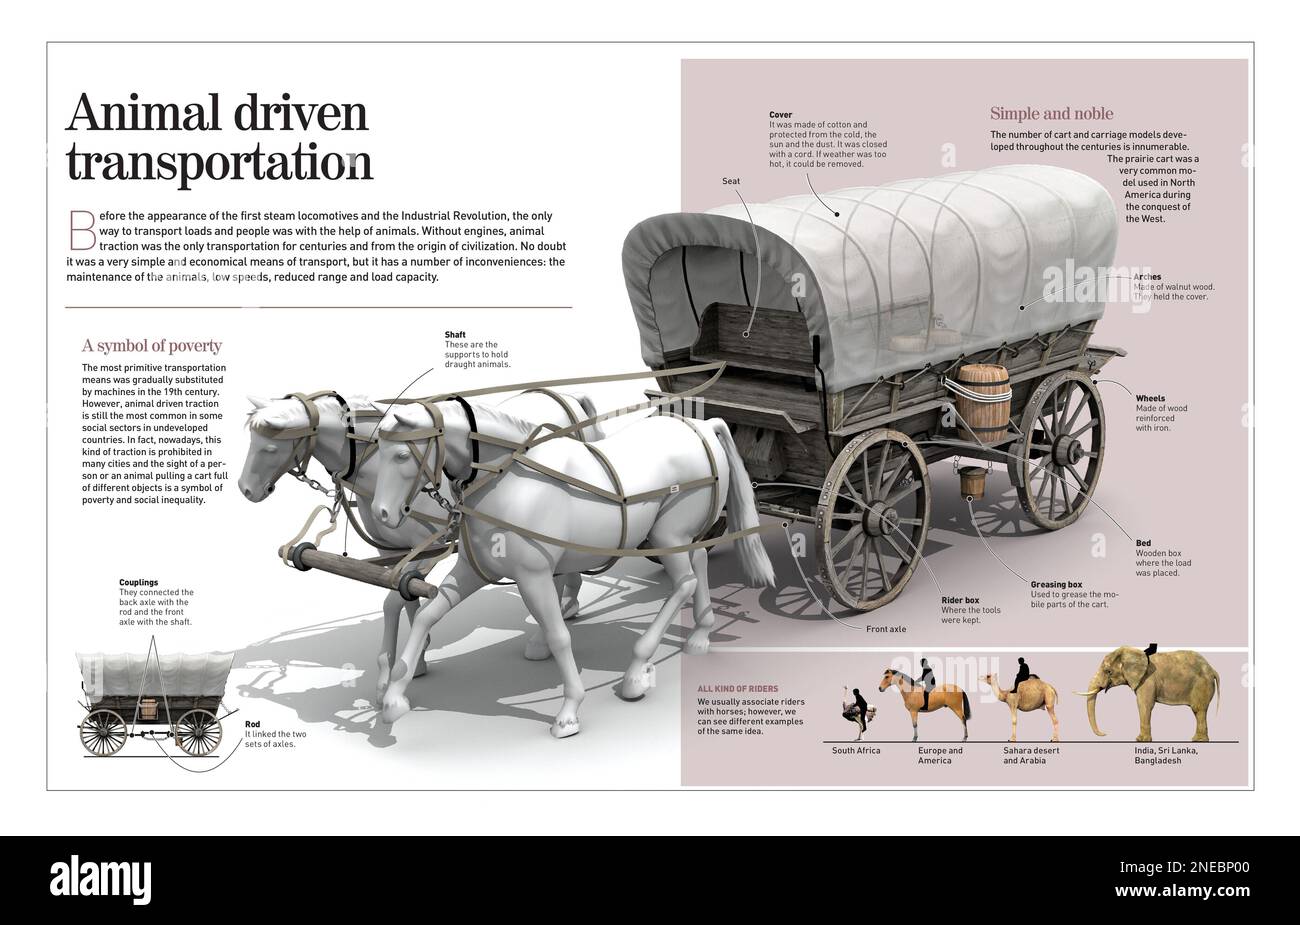 Infografik, die uns zurück zu den Ursprüngen der Zivilisation führt, als Menschen mit Tierwagen arbeiteten und sich bewegten. Alles änderte sich mit der industriellen Revolution und dem Erscheinungsbild der Dampflokomotive. [Adobe InDesign (.indd); 4960x3188]. Stockfoto